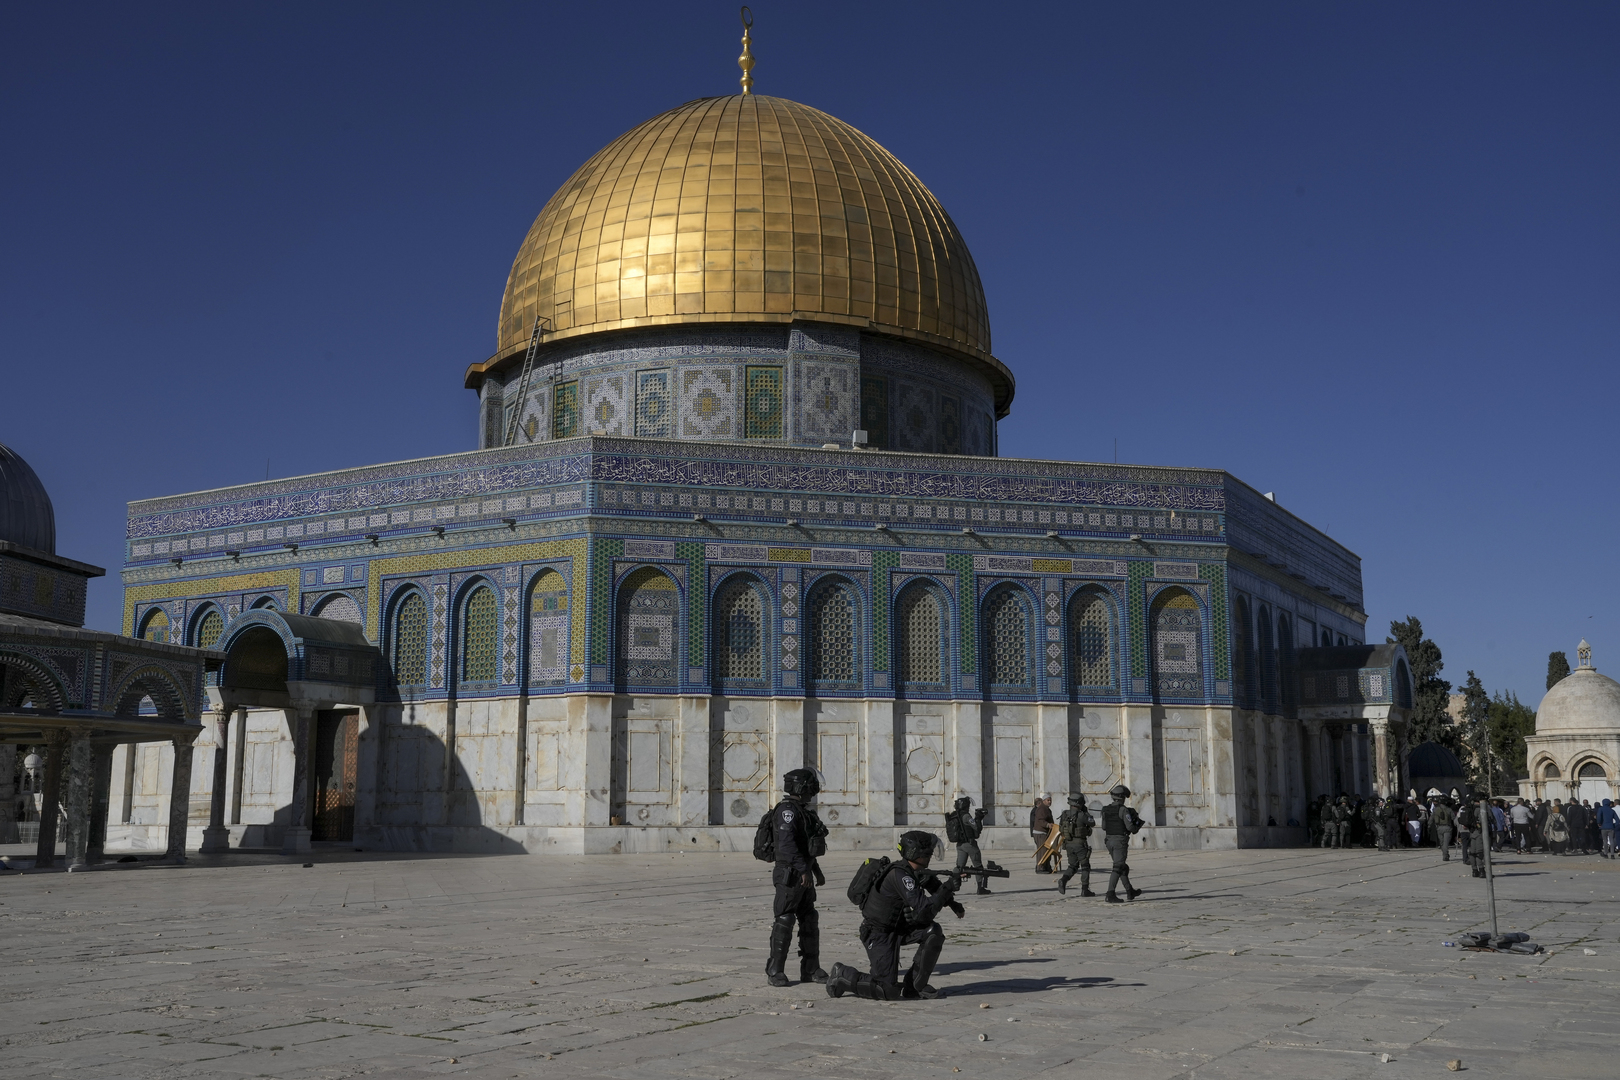 الاتحاد الأوروبي: يجب وقف العنف في القدس والضفة فورا واحترام الوضع القائم للأماكن المقدسة